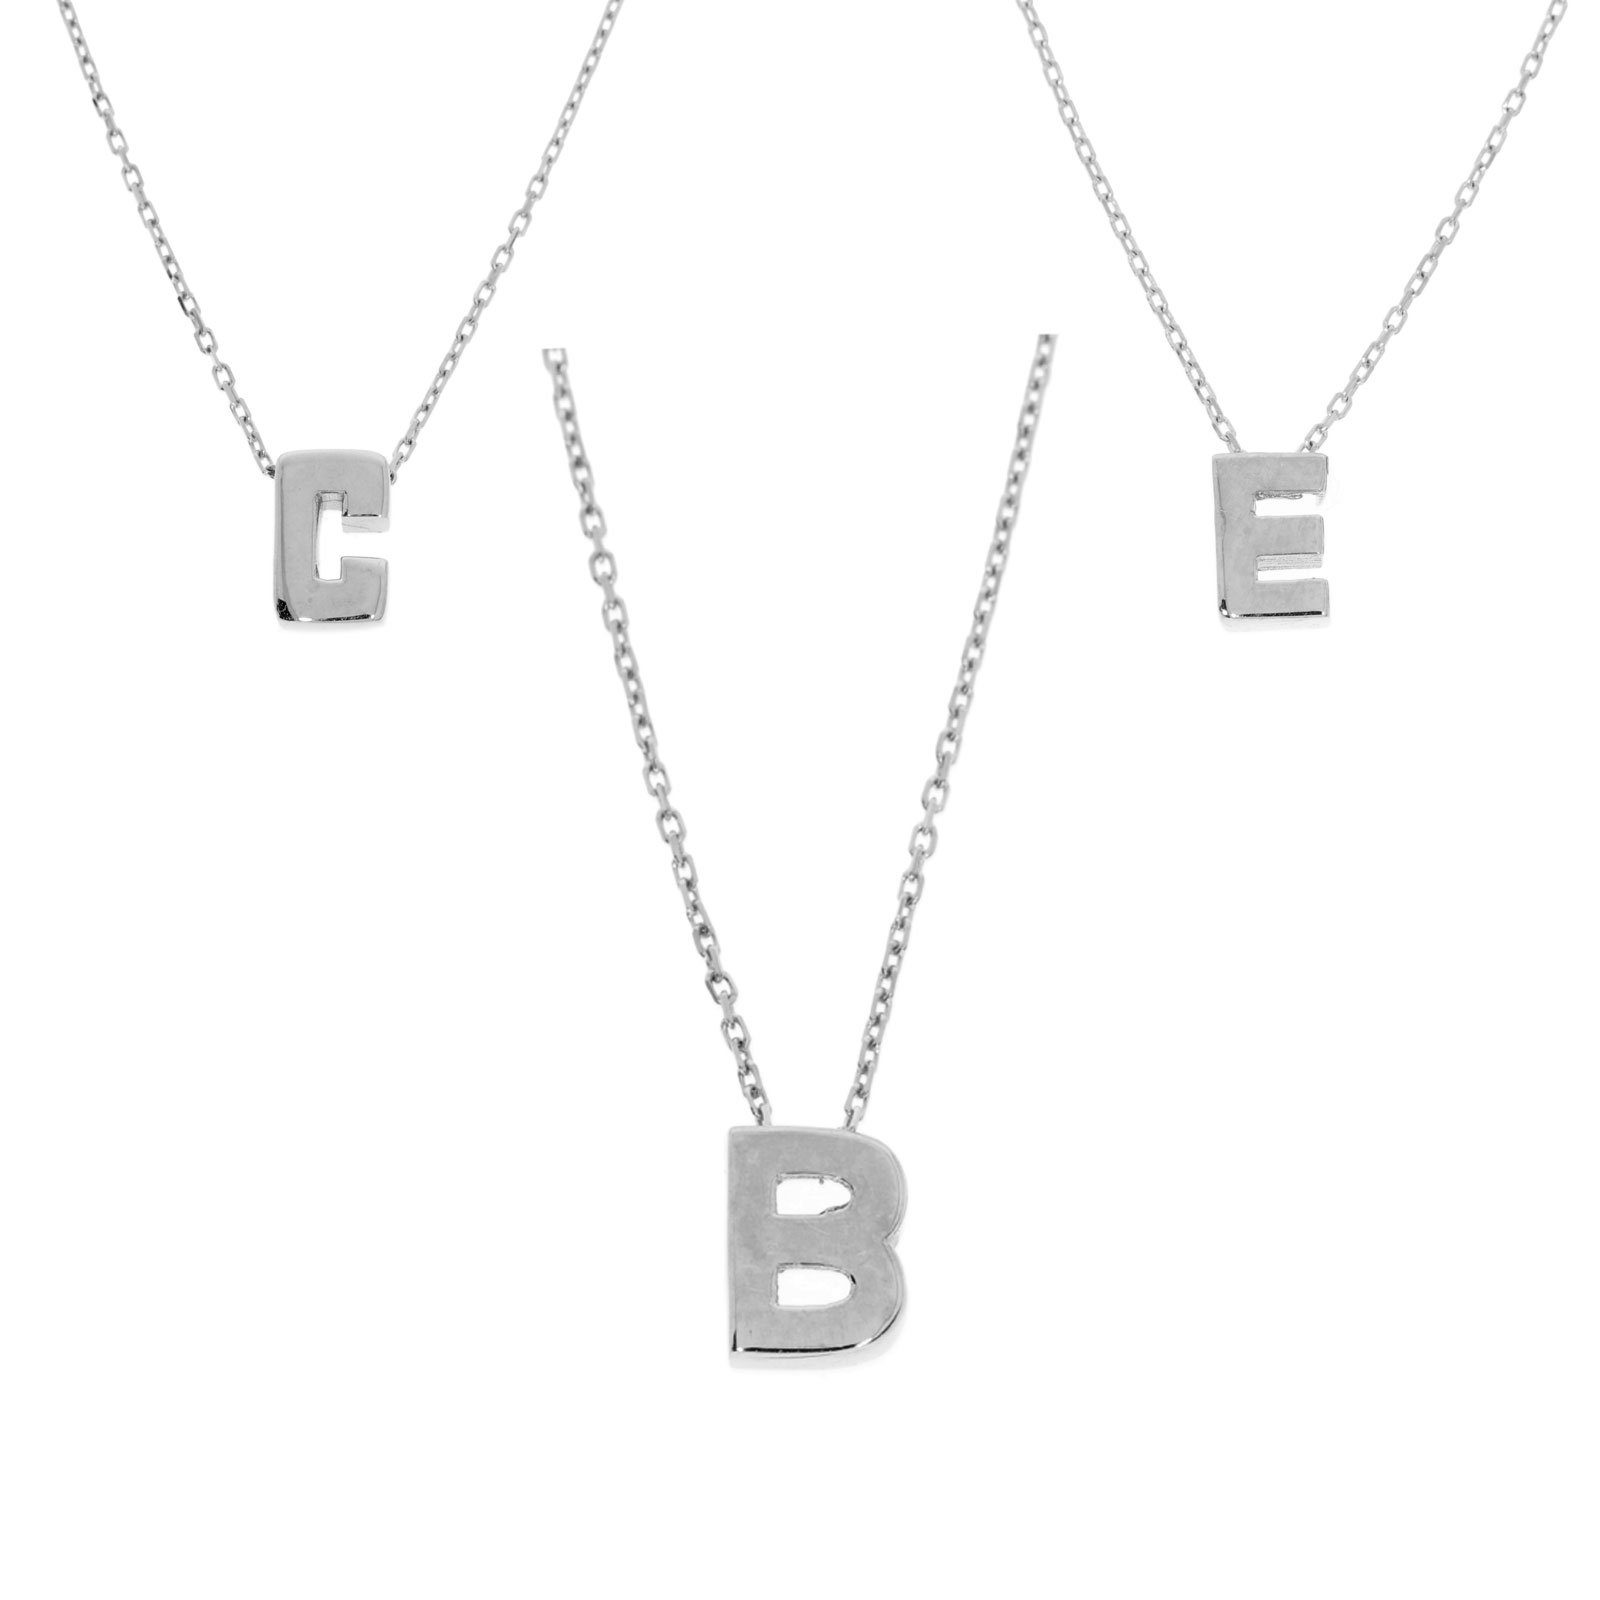 Stella-Jewellery Kette mit Anhänger Halskette mit Buchstabe Anhänger Weissgold 585er (inkl. Etui), Buchstaben Anhänger mit Kette